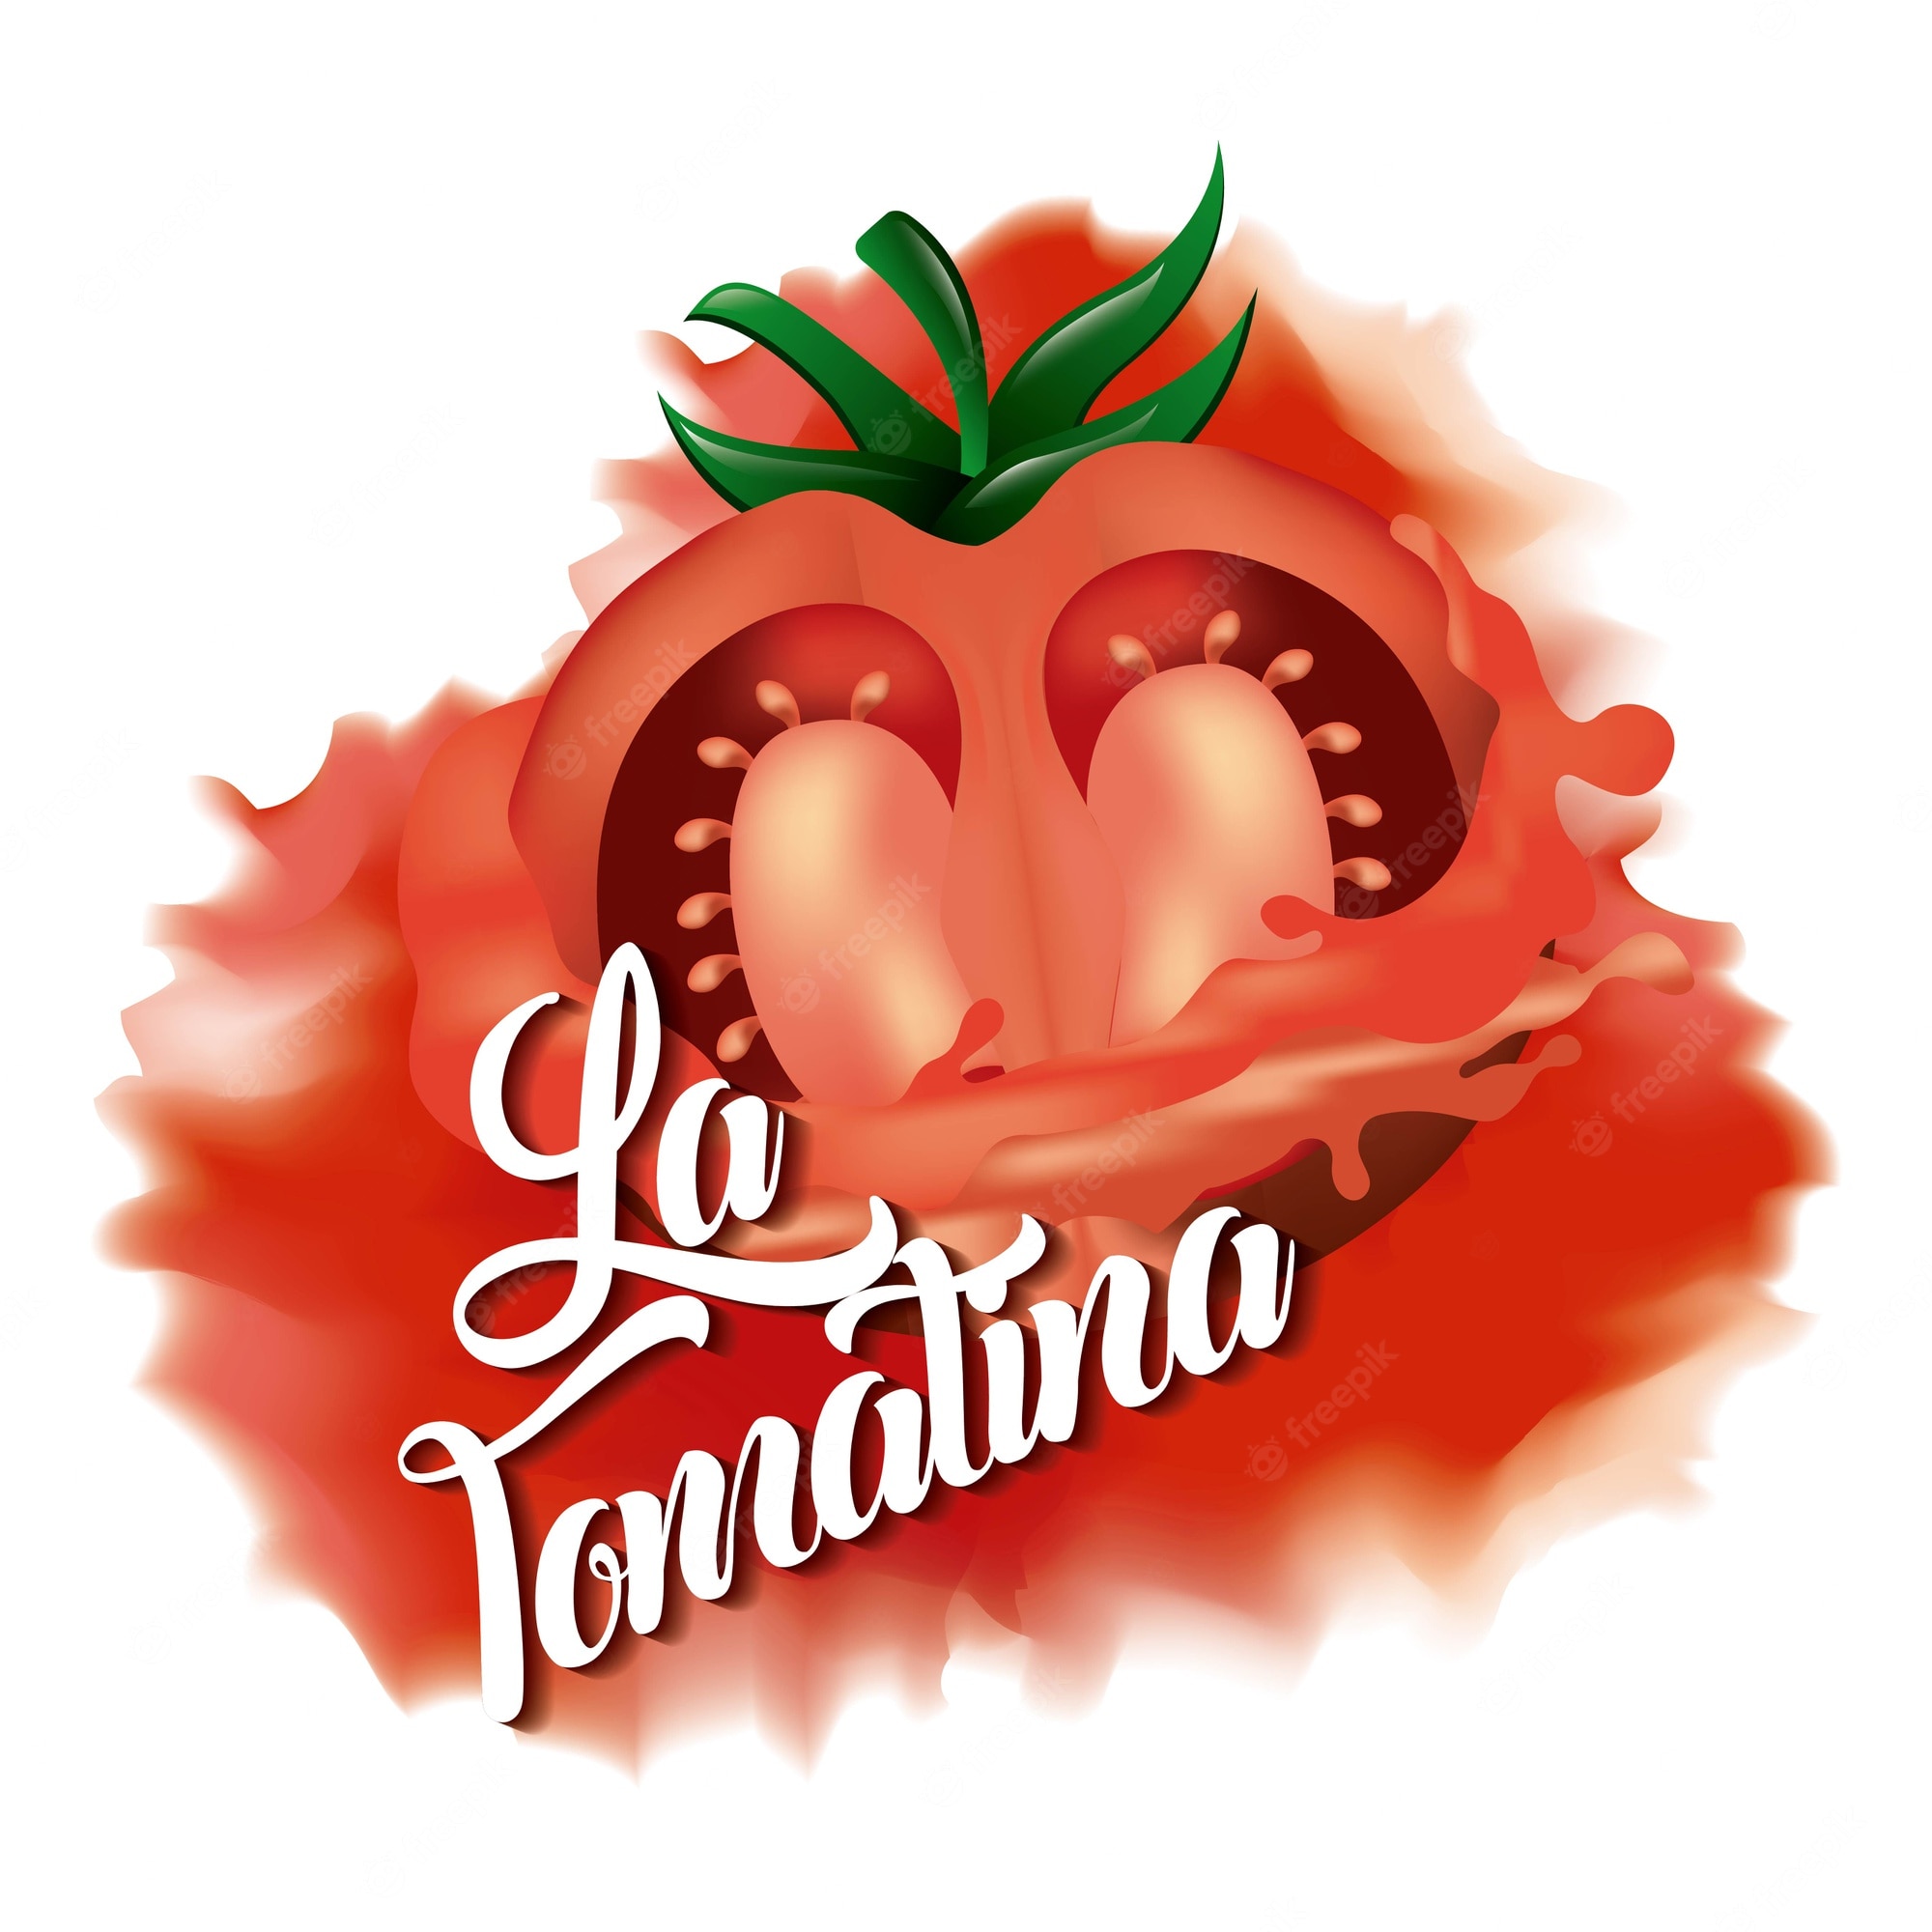 La Tomatina Wallpapers